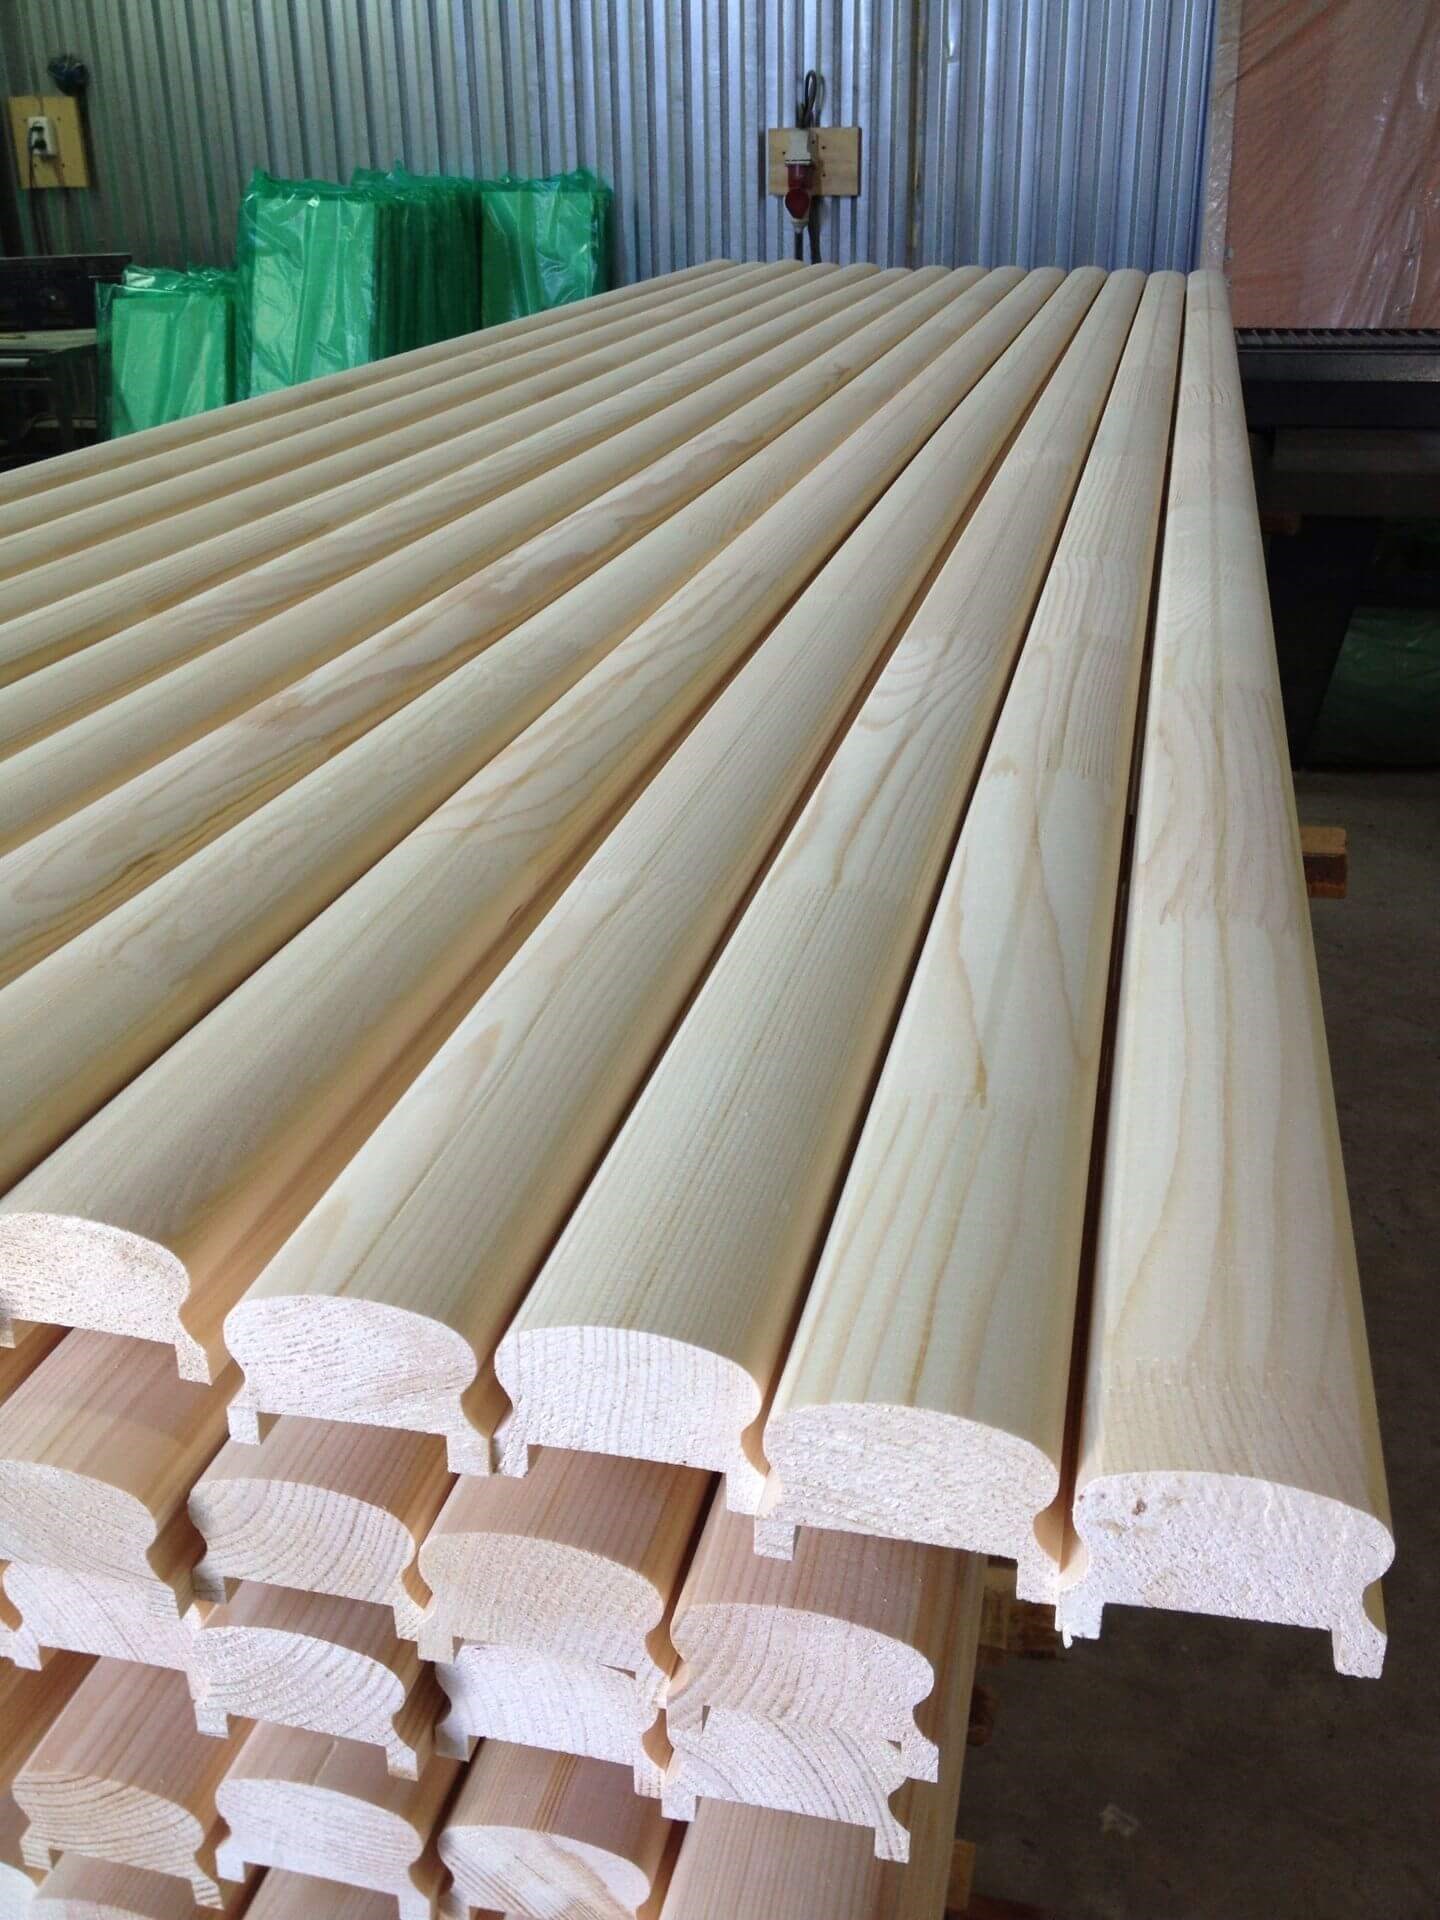 Вагонка размеры стандарт ширины и толщины - таблица продукция толщиной 16 мм и длиной 6 метров стандартная длина доски